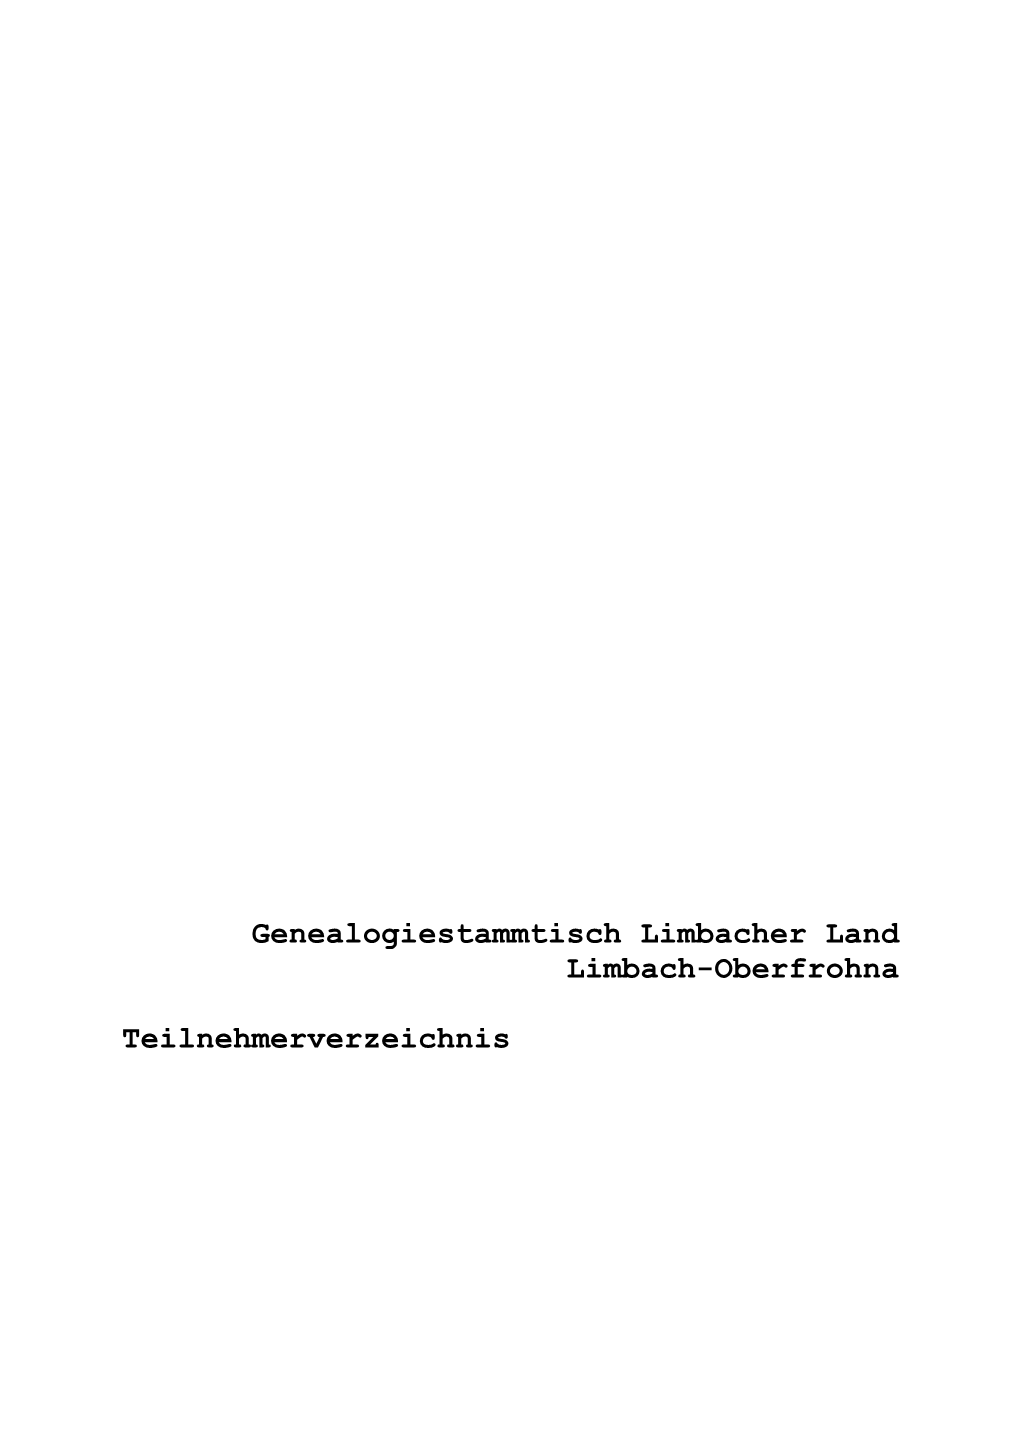 Genealogiestammtisch Limbacher Land Limbach-Oberfrohna